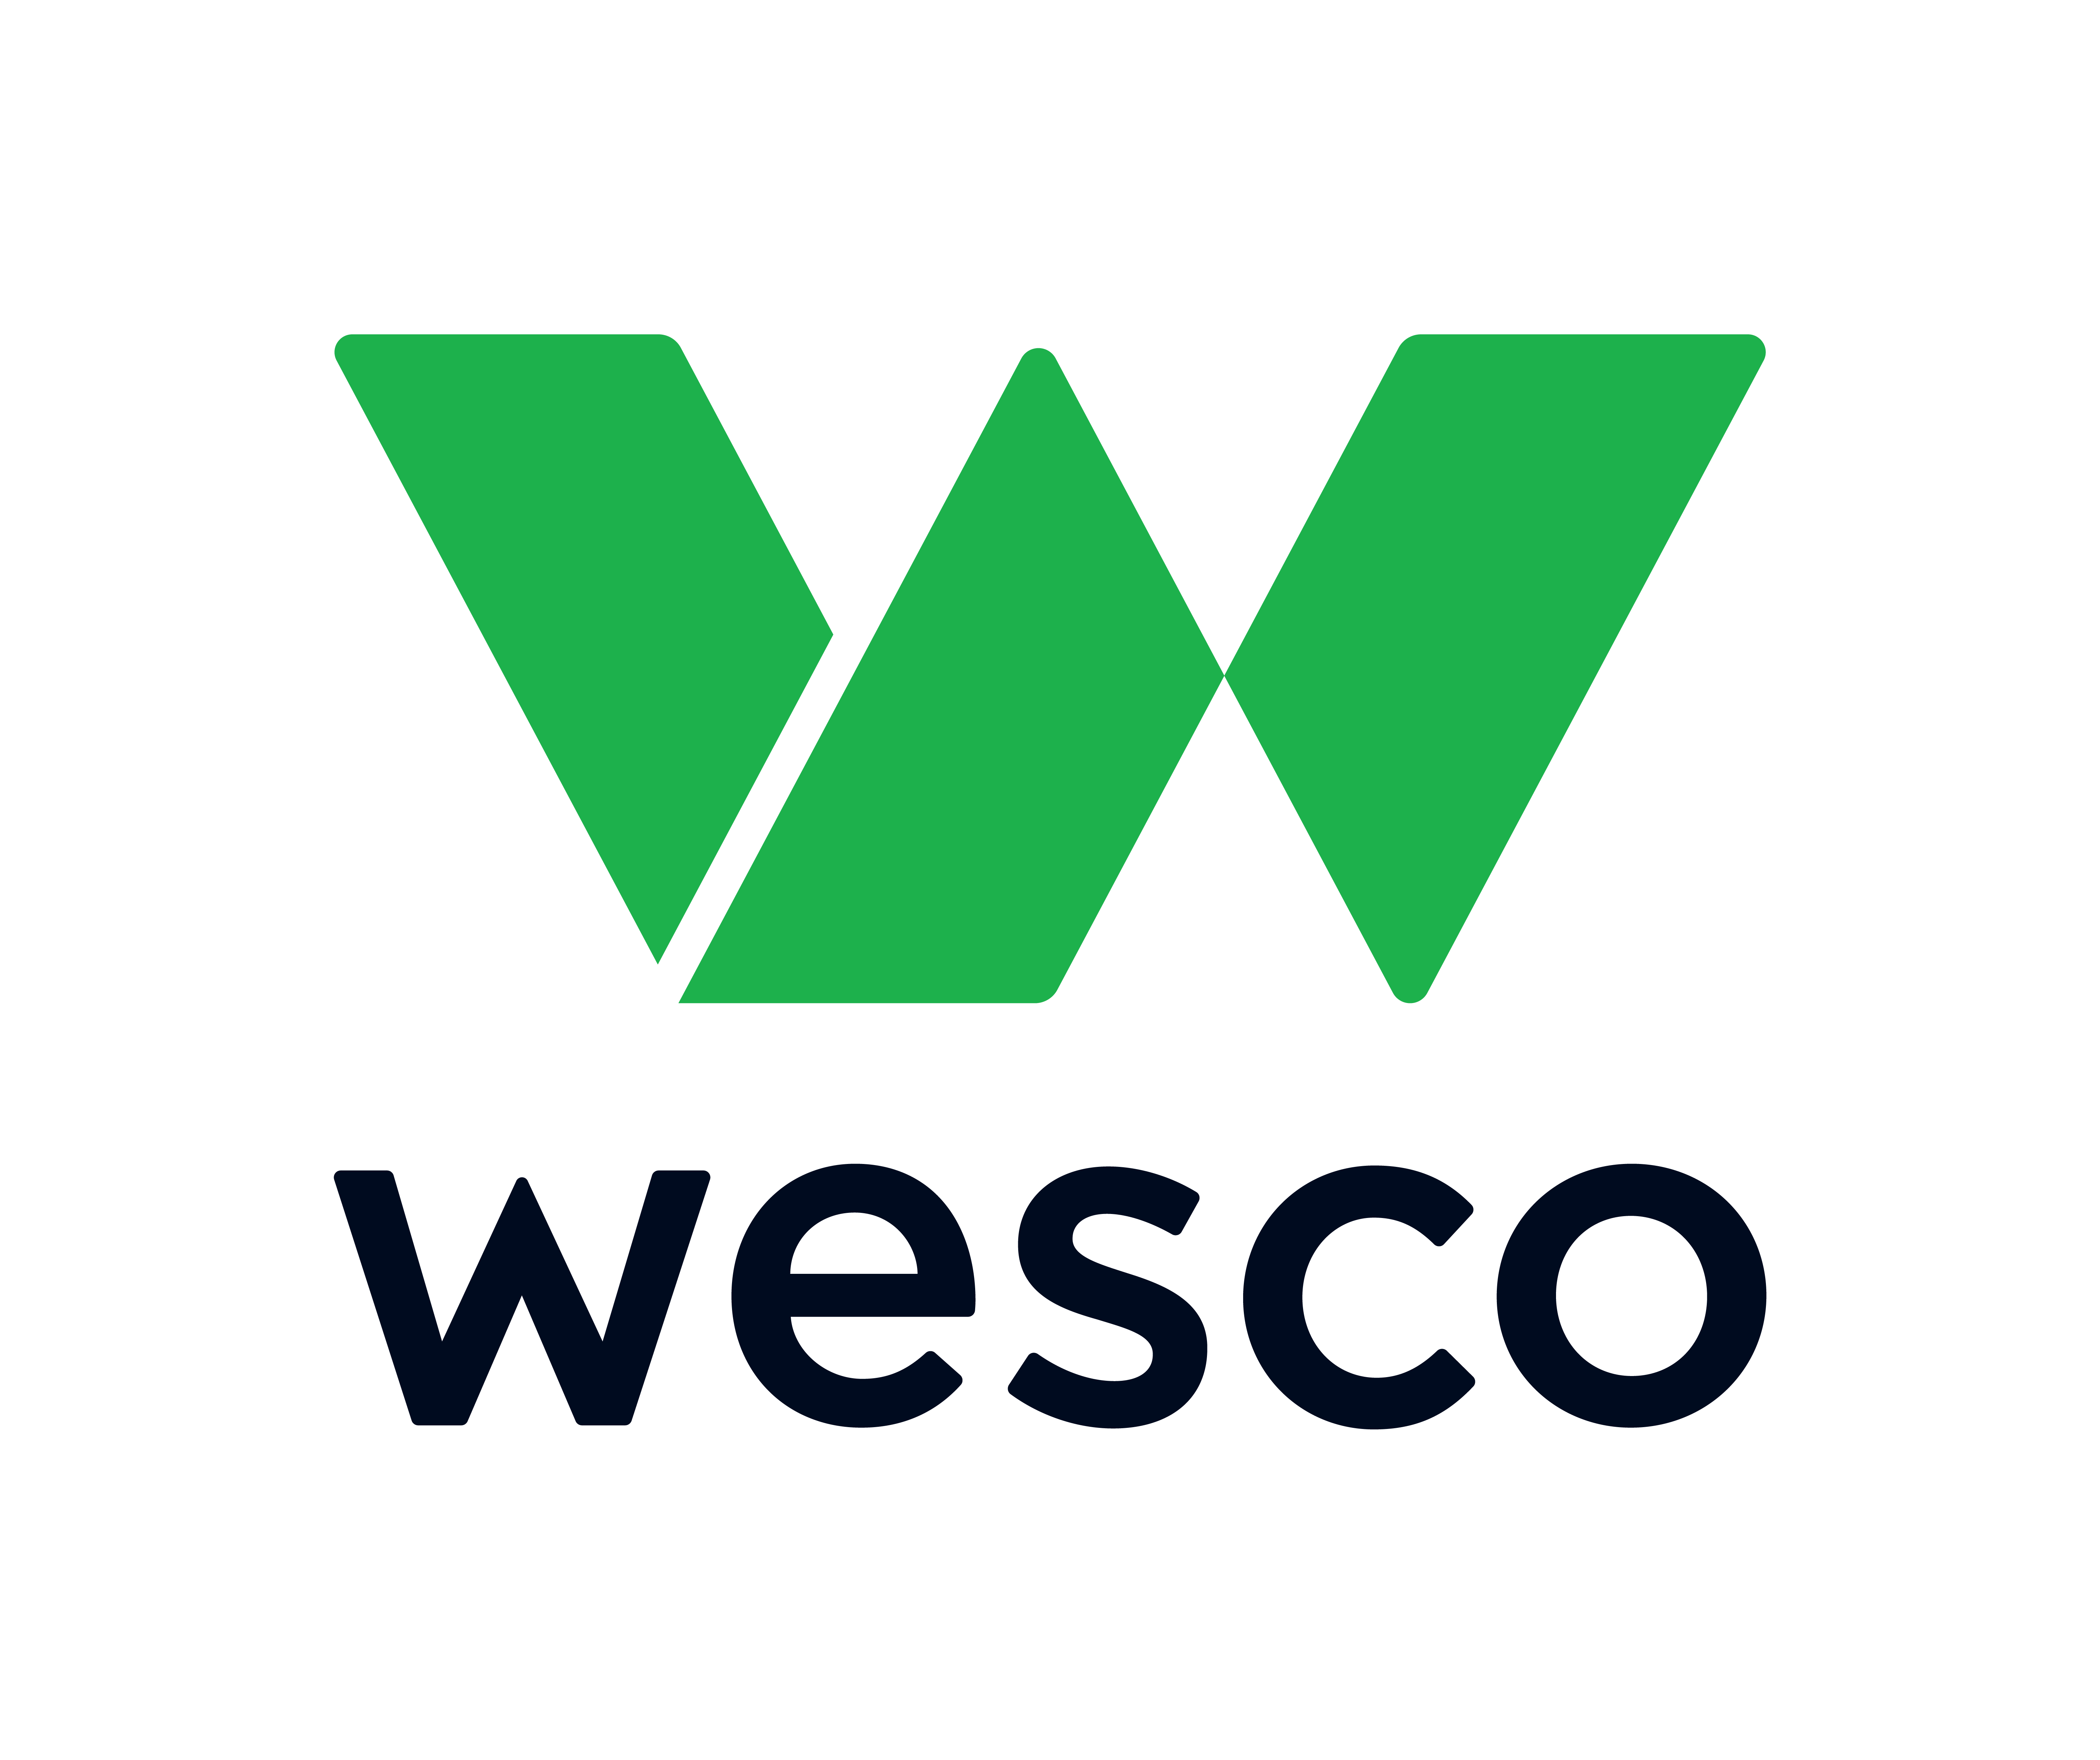 www.wesco.com